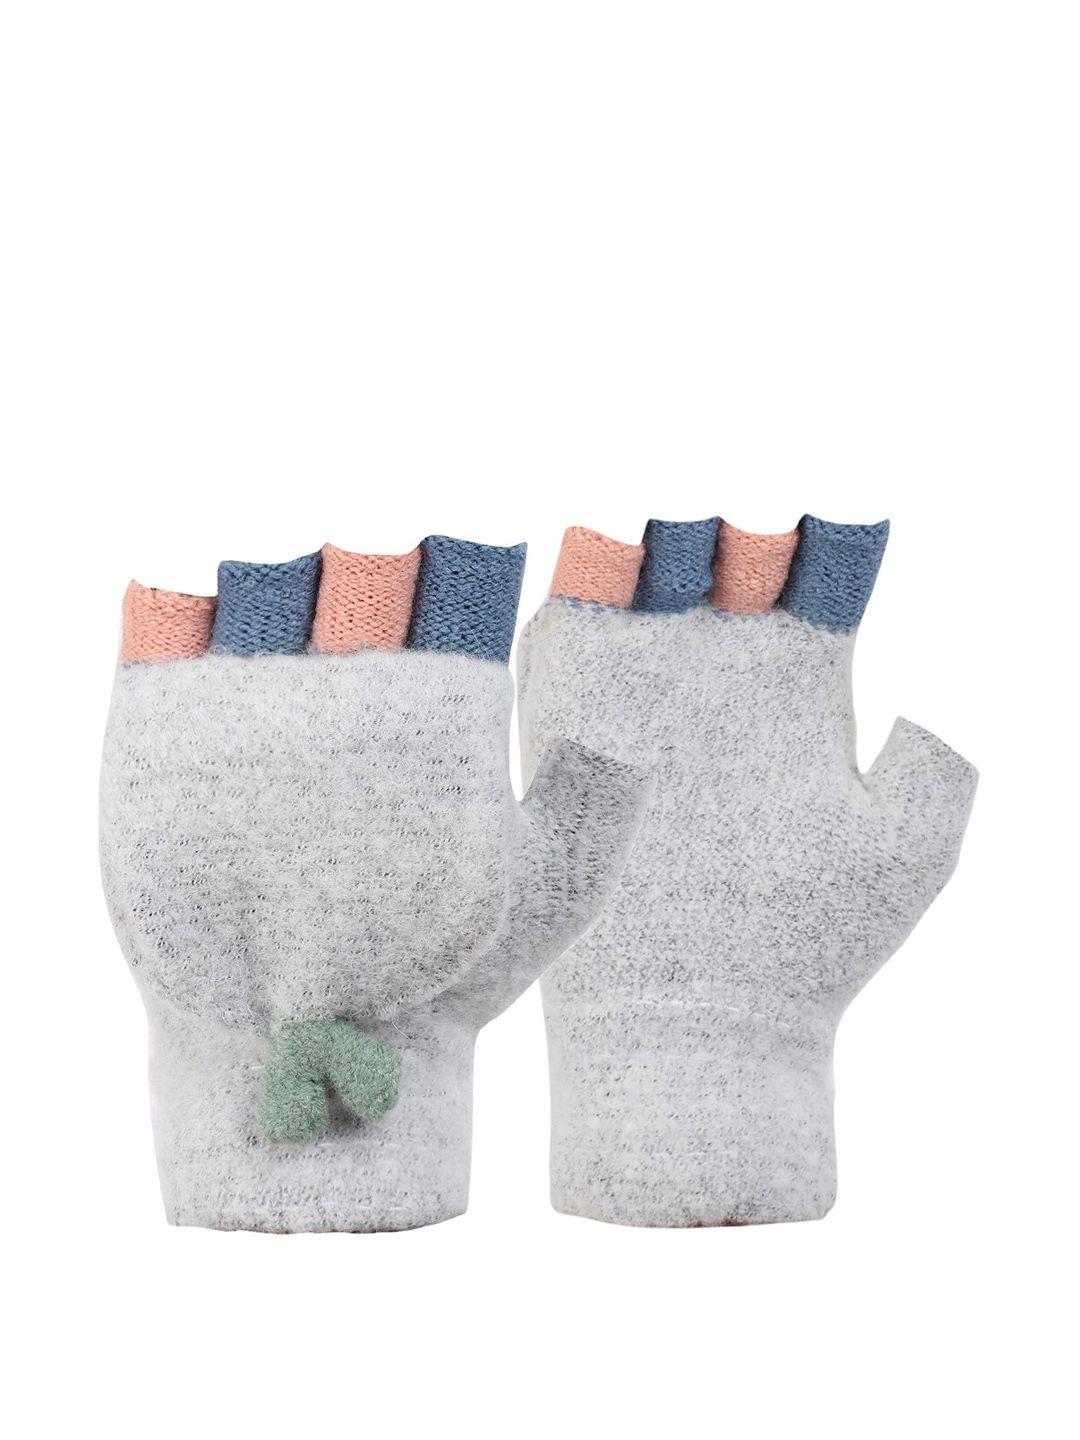 ellis grey & blue patterned 2 in 1 gloves